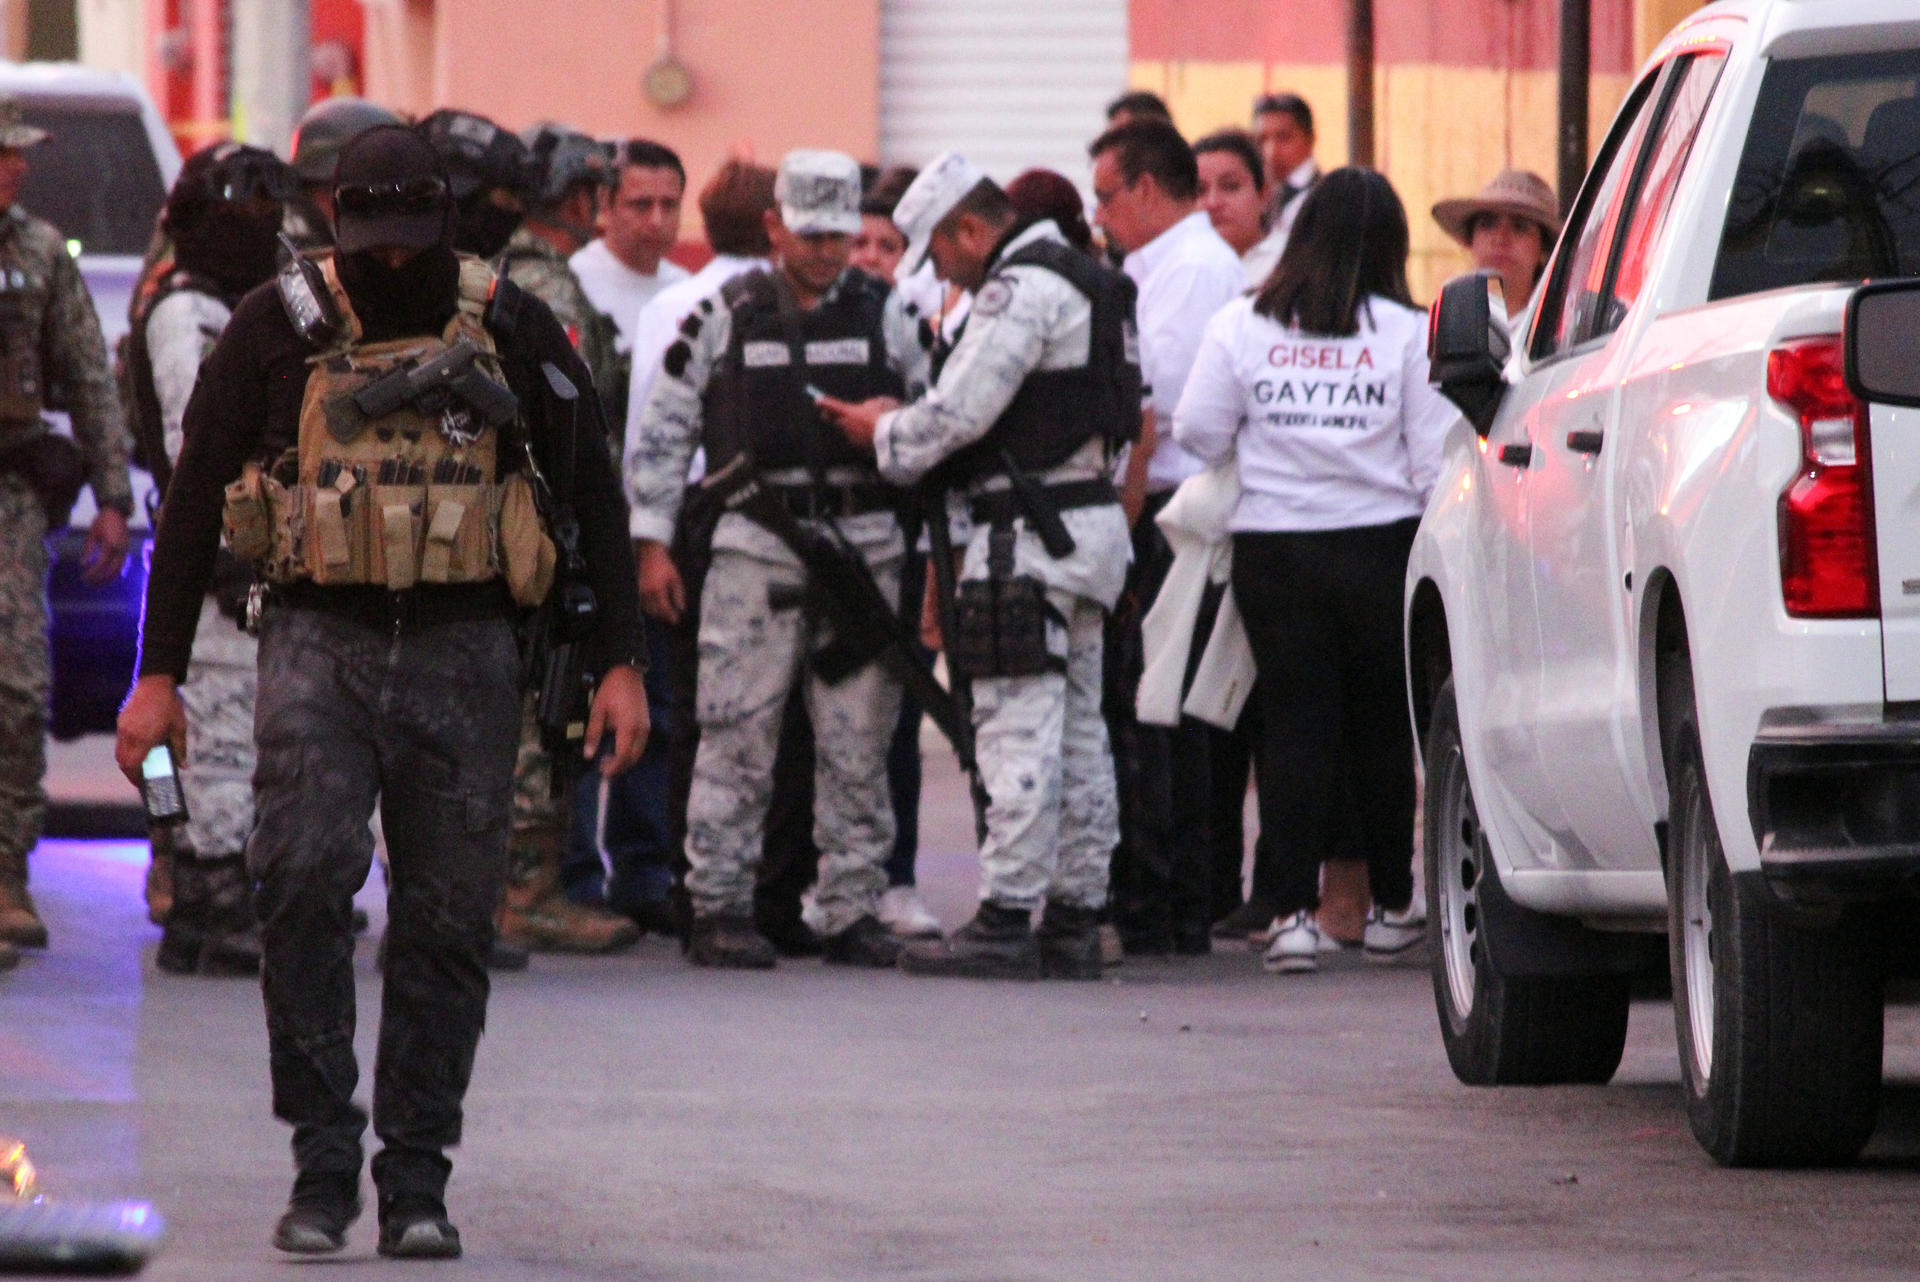 El periodista Alejandro Alfredo Martínez Noguez fue asesinado a balazos este domingo en el municipio de Celaya, en el estado mexicano de Guanajuato (centro), según informaron las autoridades. Imagen de archivo. EFE/ Luis Ramírez